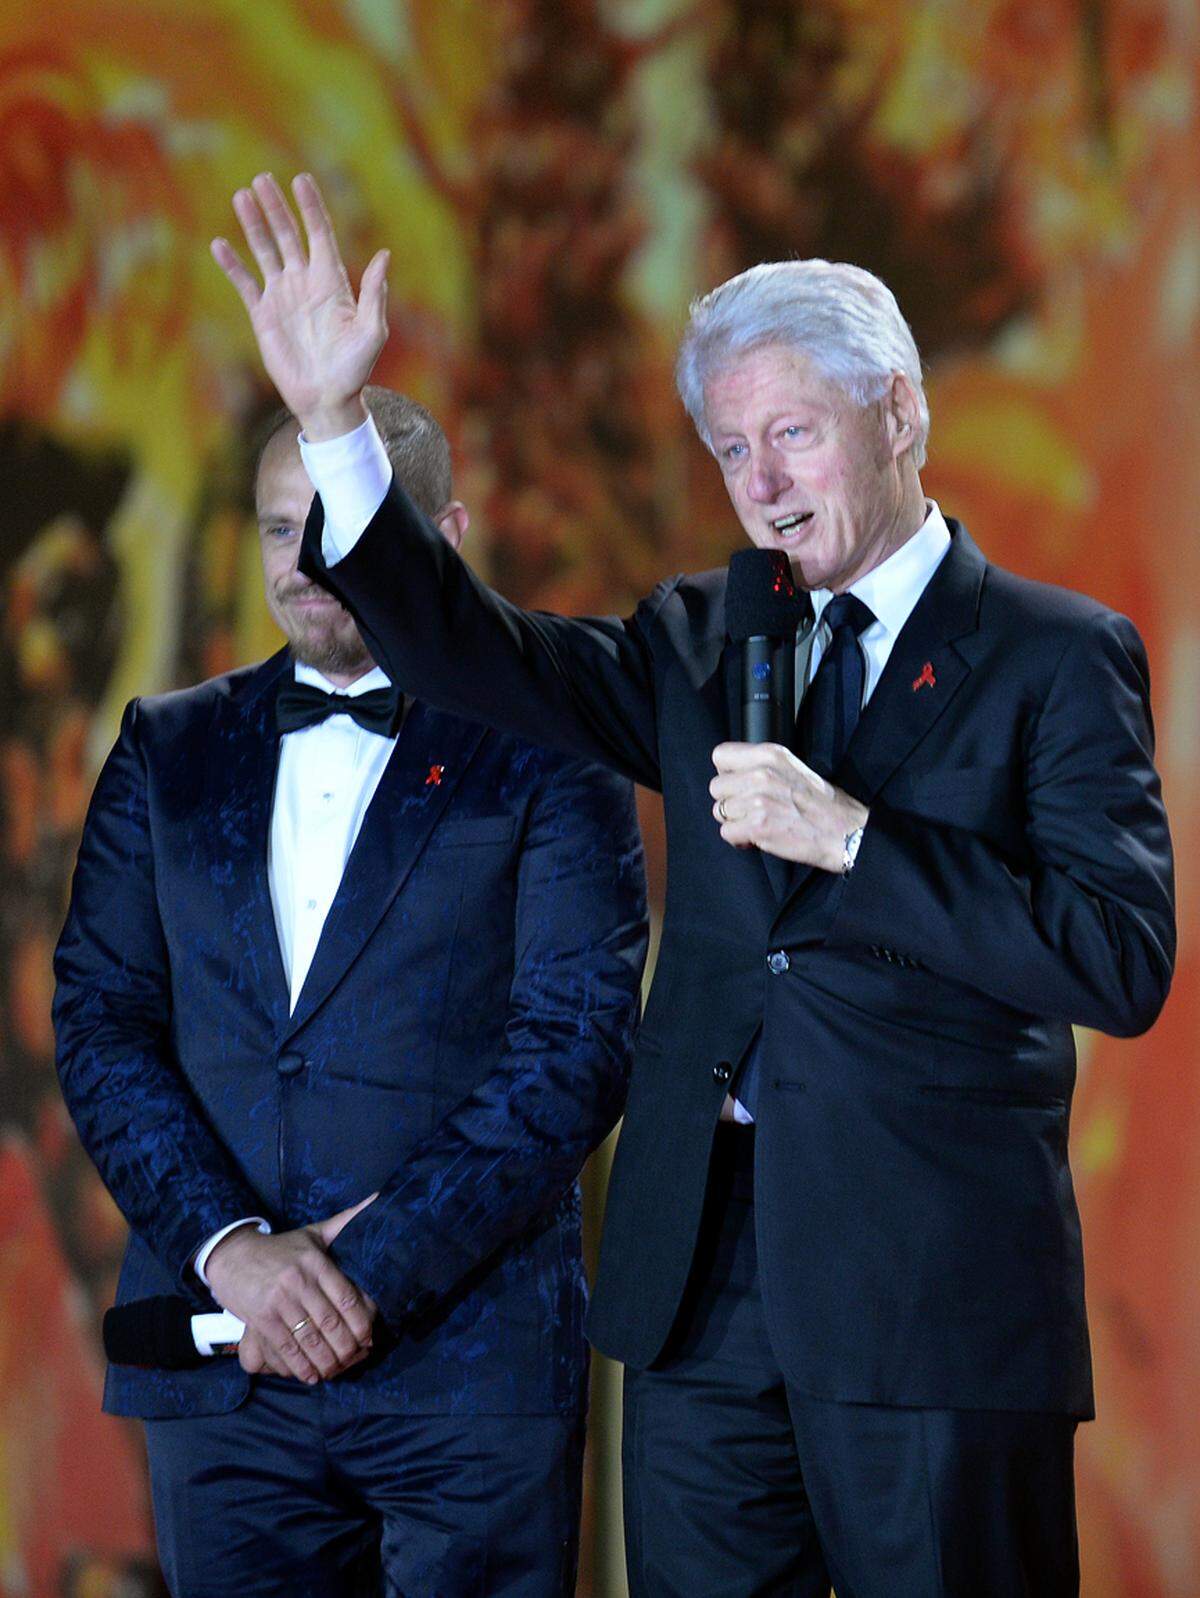 Auch der früherer US-Präsident Bill Clinton verfolgte die Eröffnungszeremonie und sprach als Gründer der Clinton Foundation zum Publikum. "Heute Abend wollen wir feiern, aber wird dürfen nicht vergessen, dass wir entschlossen sein müssen jedem die Chance auf ein besseres Leben zu geben", mahnte er.